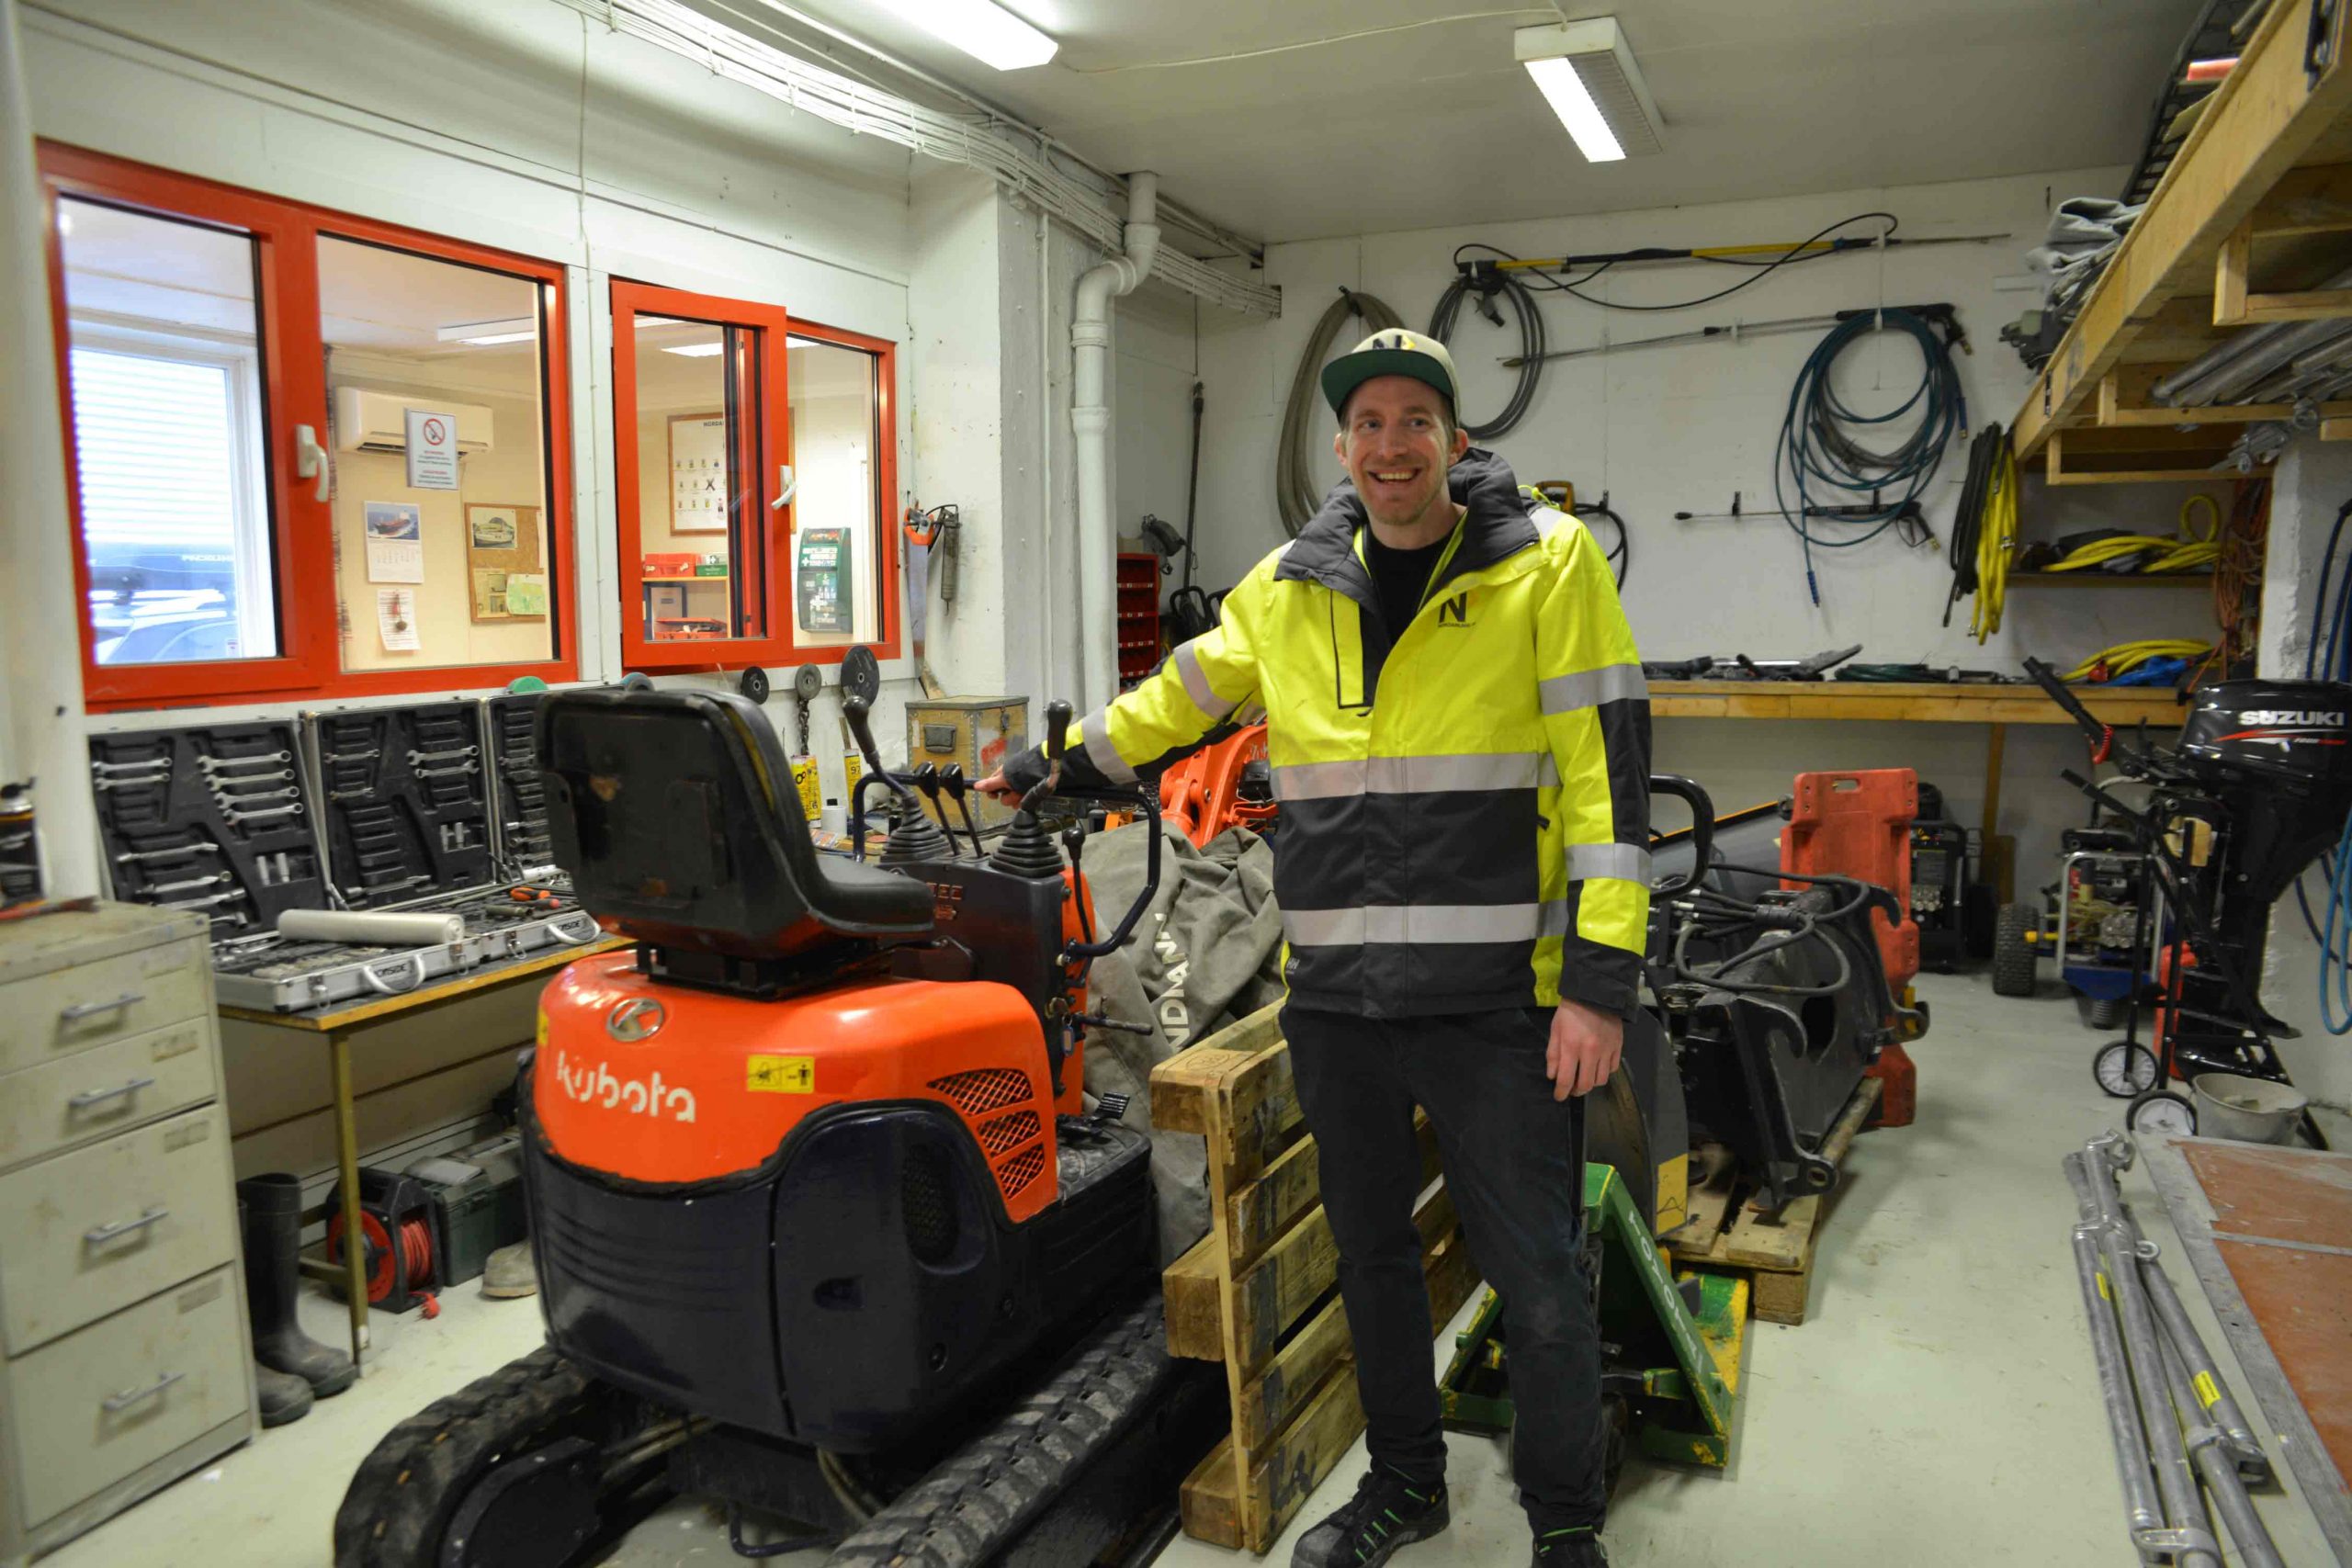 Kim Larsson er under opplæring for å bli prosjektleder. Han har gått på flere kurs hos Holte innen HMS, KS og SmartKalk, og synes det er veldig lovende. Her i Nordanleggs velutstyrte maskinlager og veksted.